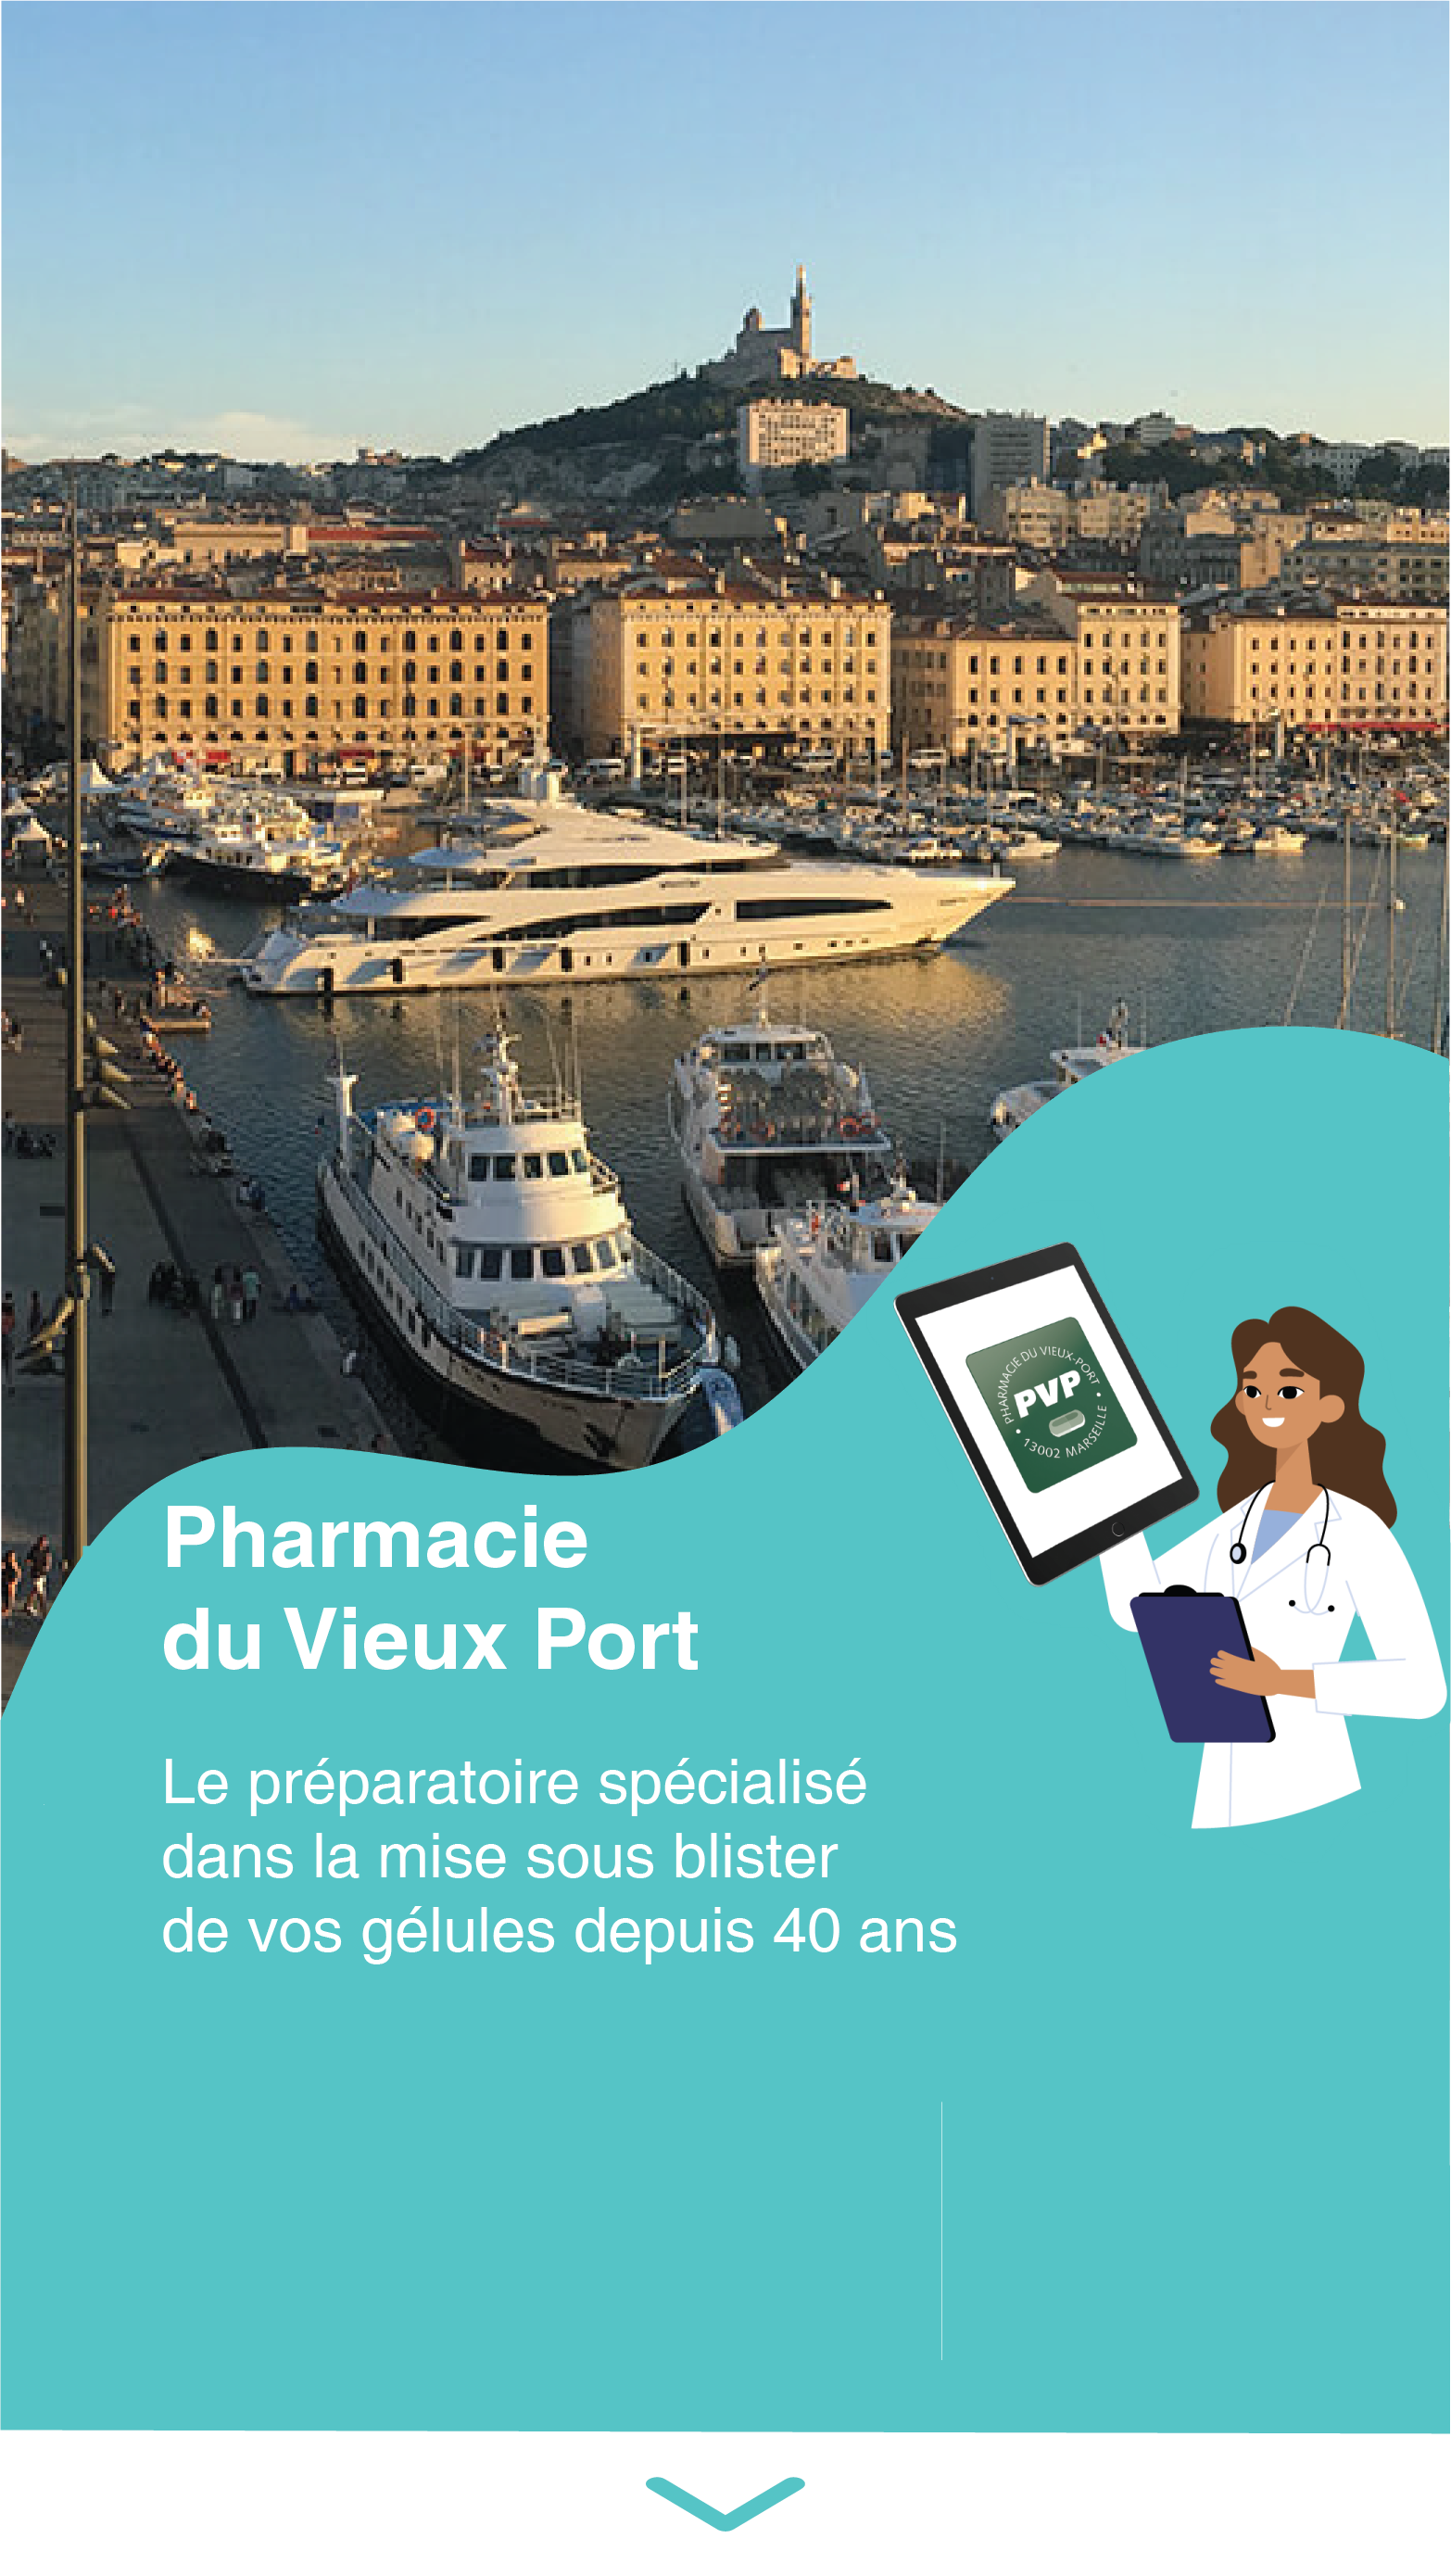 Affiche Marseille le Vieux-Port